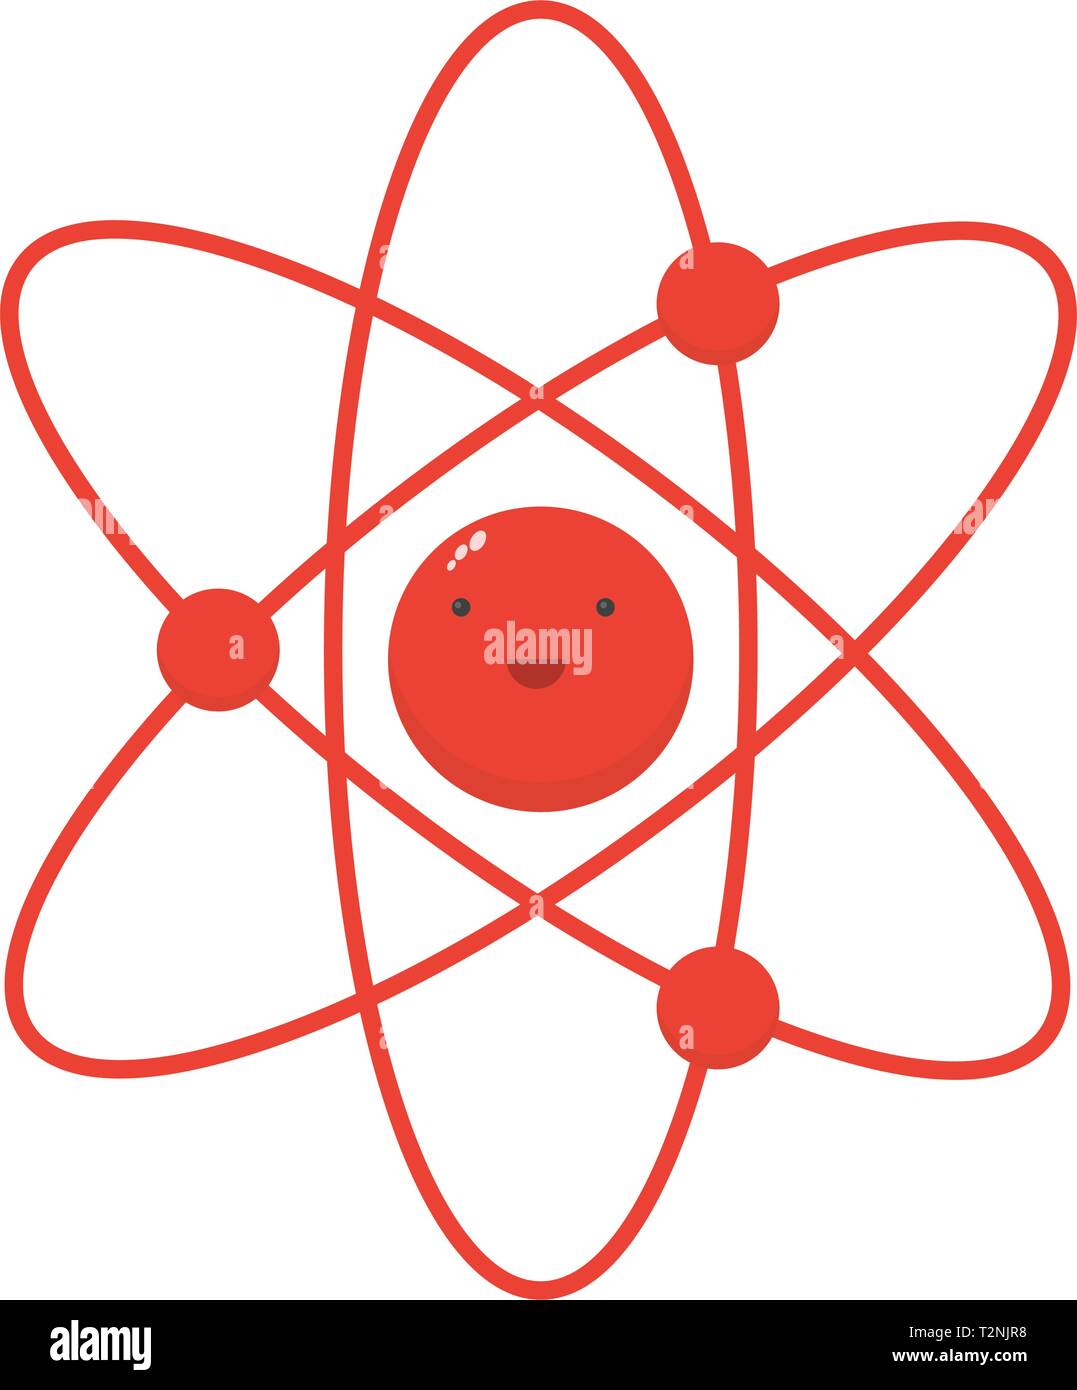 Atom è un piccolo simpatico personaggio simpatico molecola icona piana, la fisica e la chimica illustrazione vettoriale Illustrazione Vettoriale